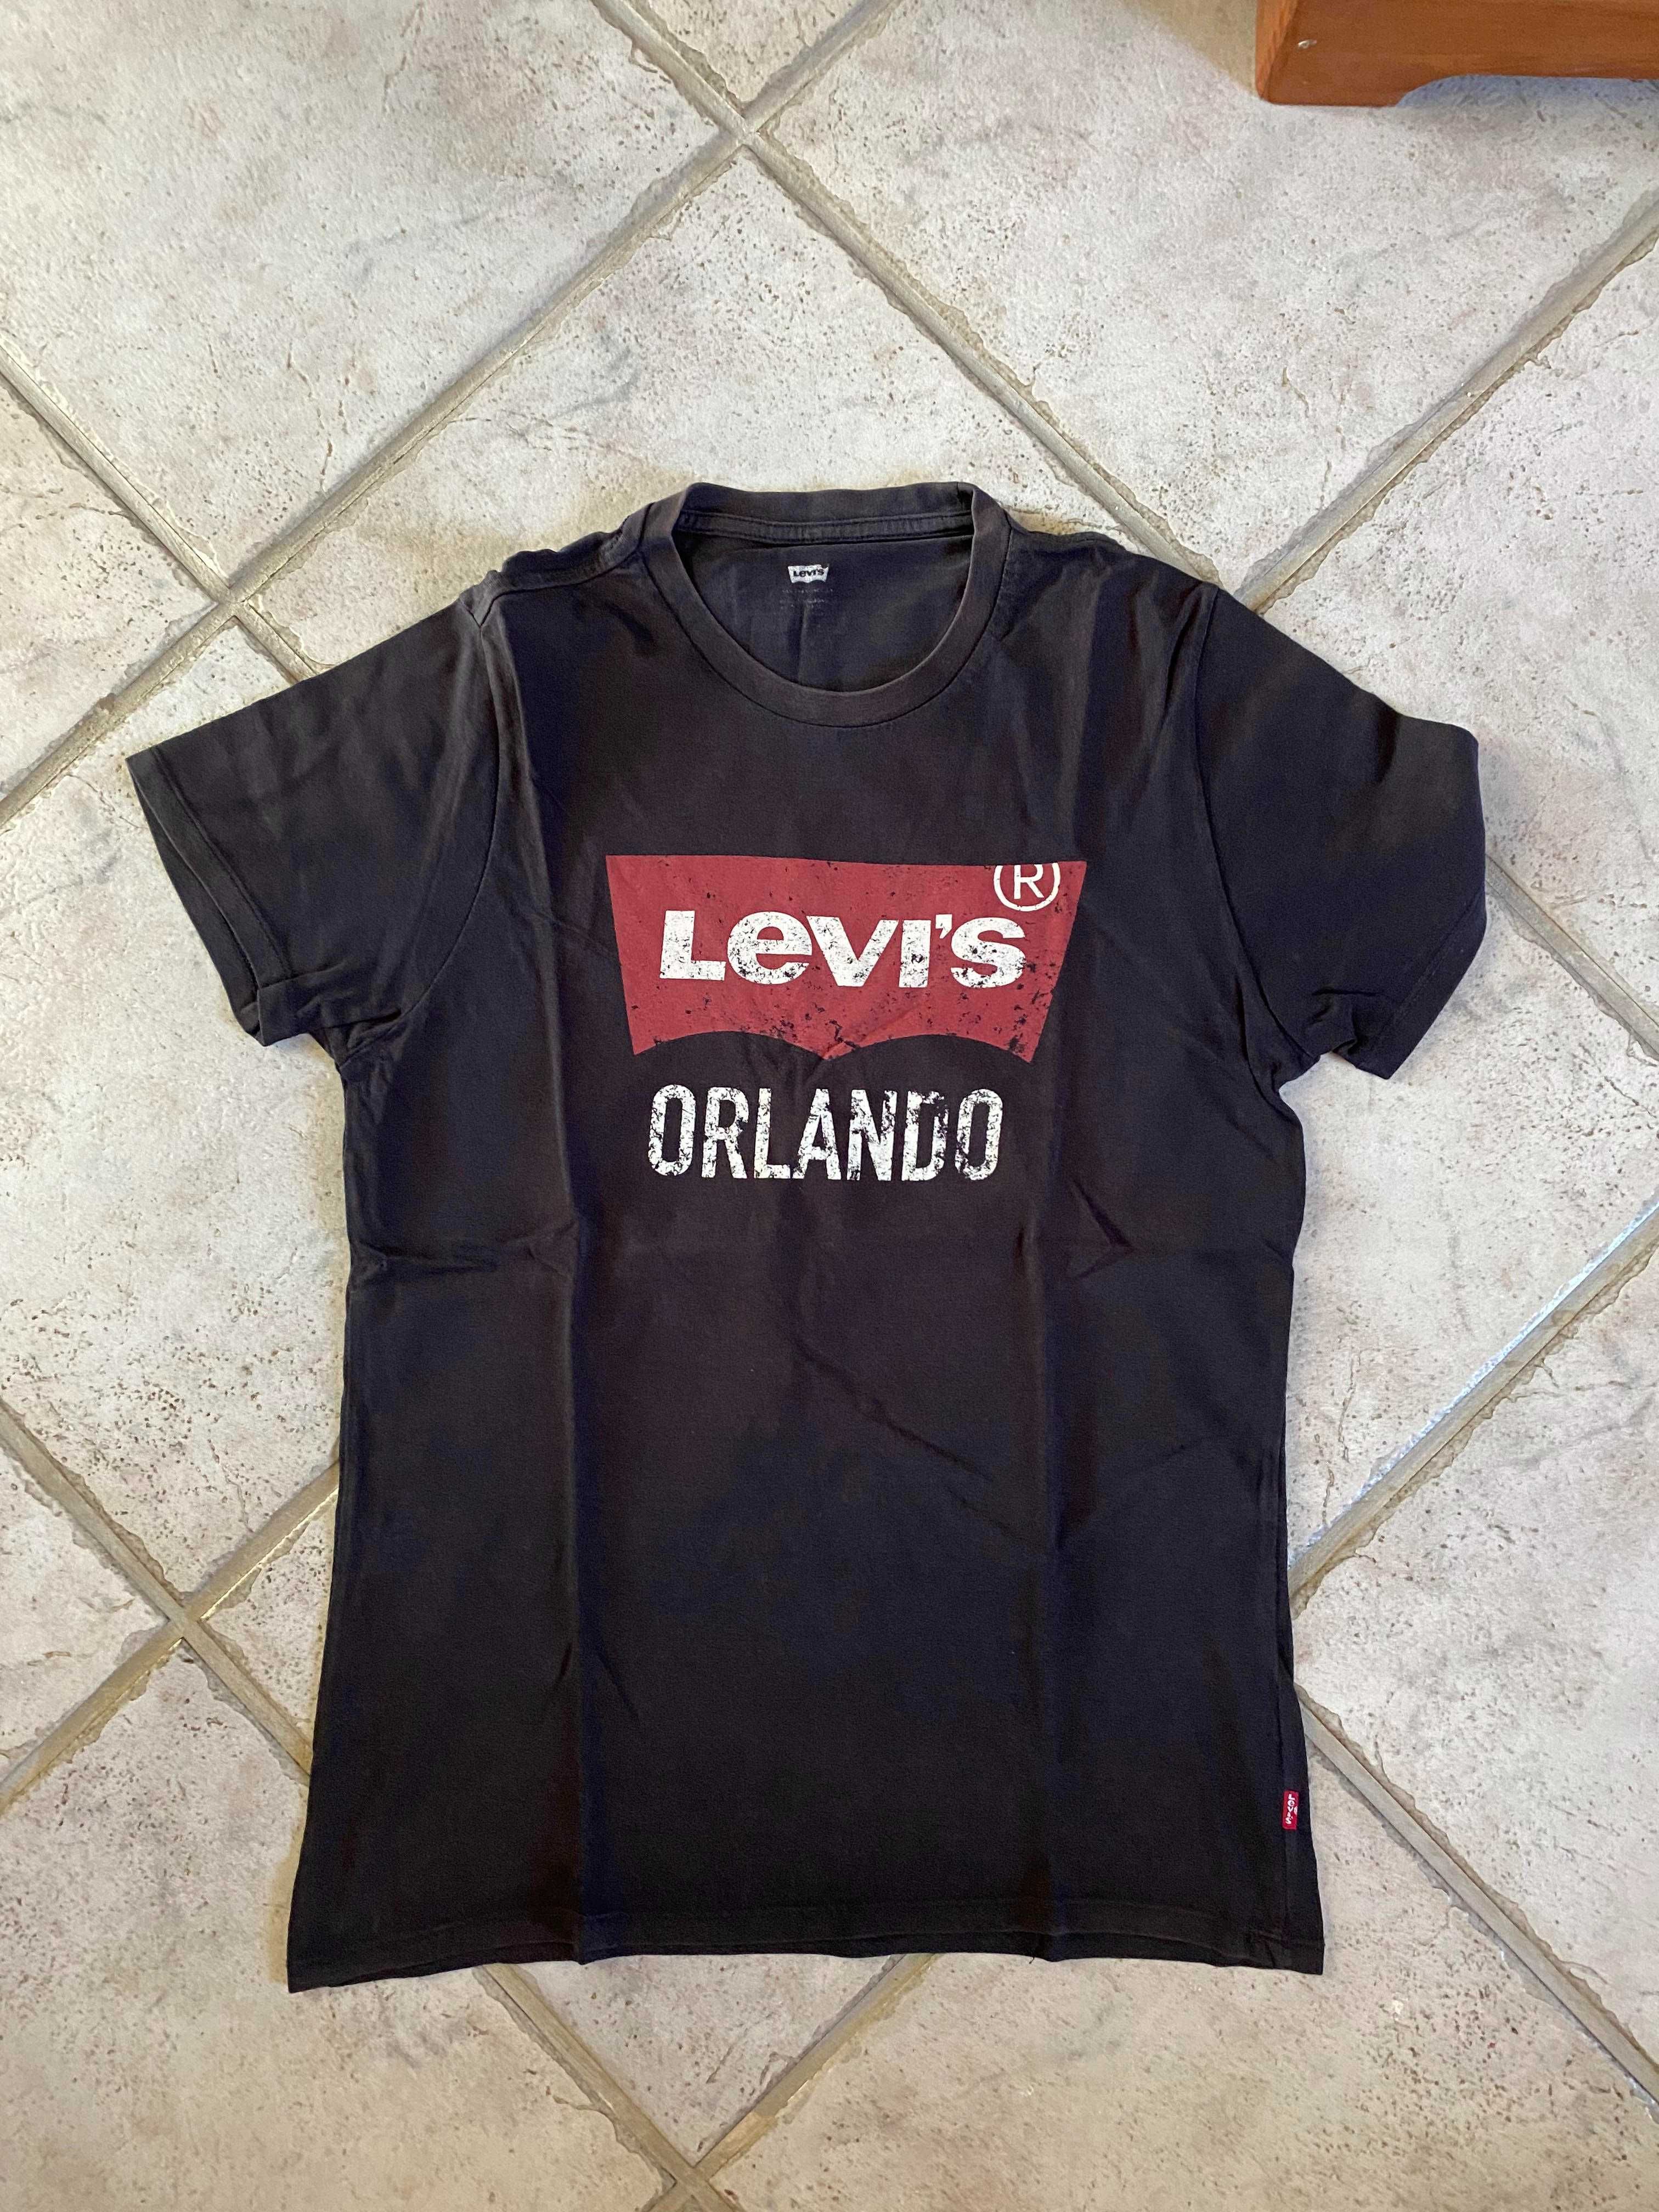 T-shirt Levis de Orlando(EUA)